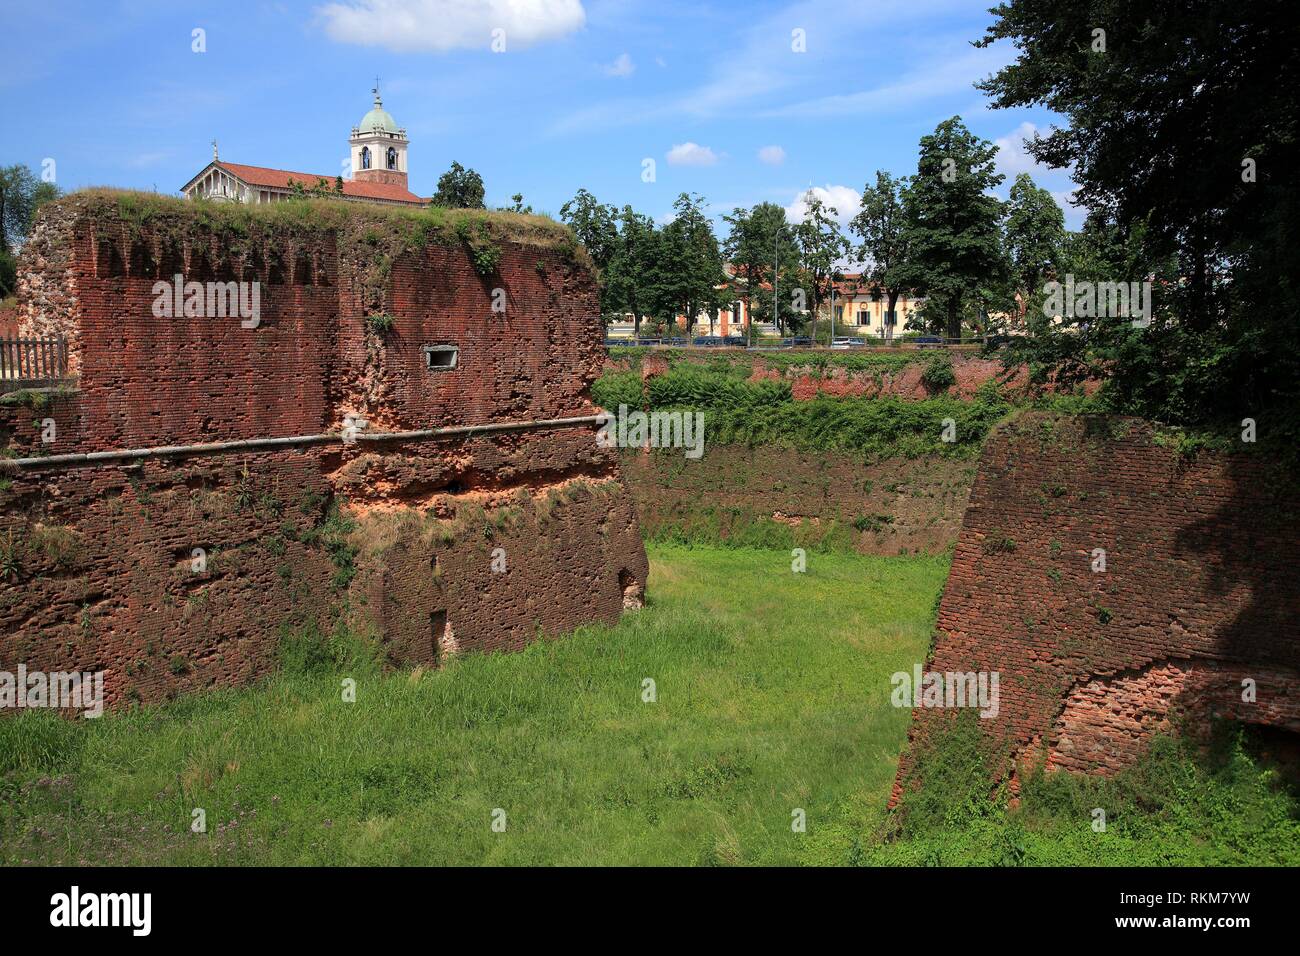 Remains of Visonti-Sforza castle Novara. Italy. Stock Photo